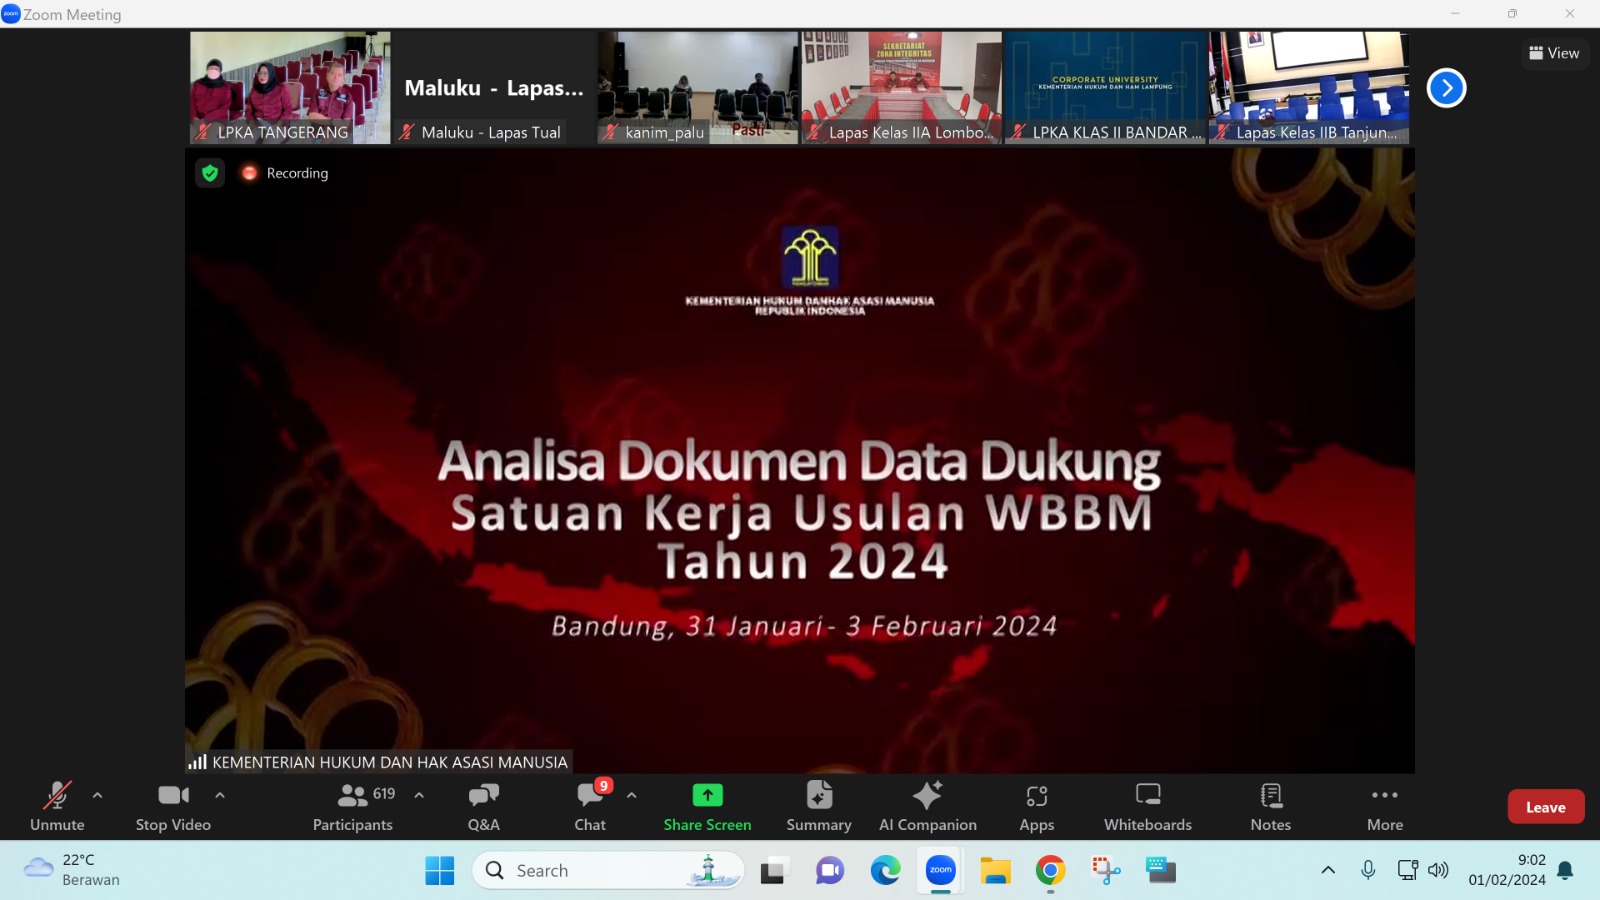 Persiapan Analisa Daduk WBBM, Tim Pembangunan ZI LPKA Kelas I Tangerang ikut Kegiatan Persiapan Analisa Dokumen Data Dukung Satuan Kerja Usulan WBBM Tahun 2024